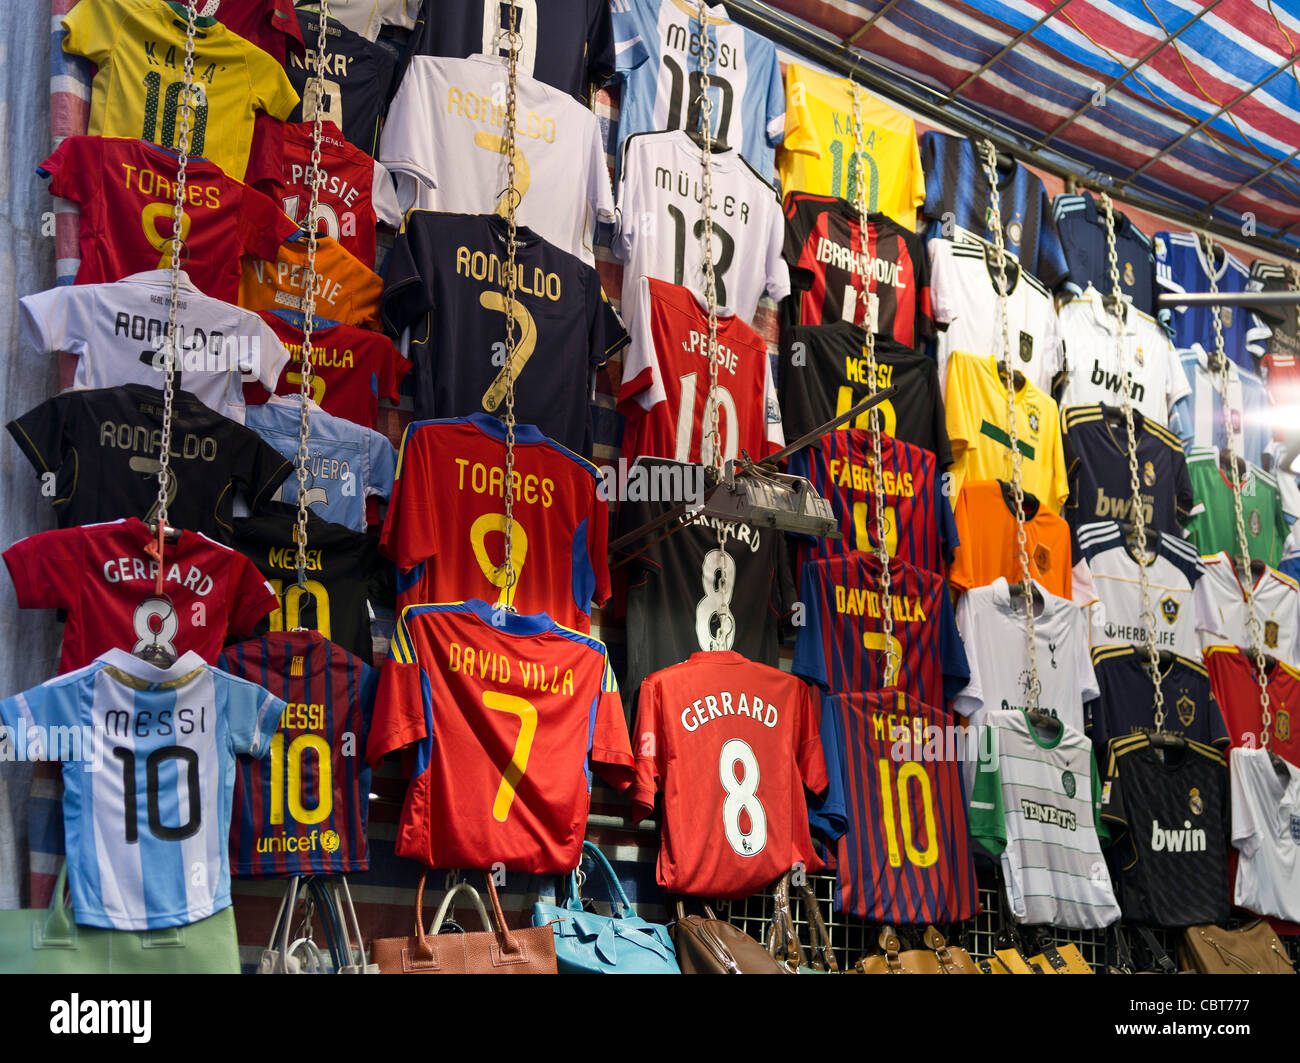 Puesto de camisetas de fútbol fotografías e imágenes alta resolución - Alamy